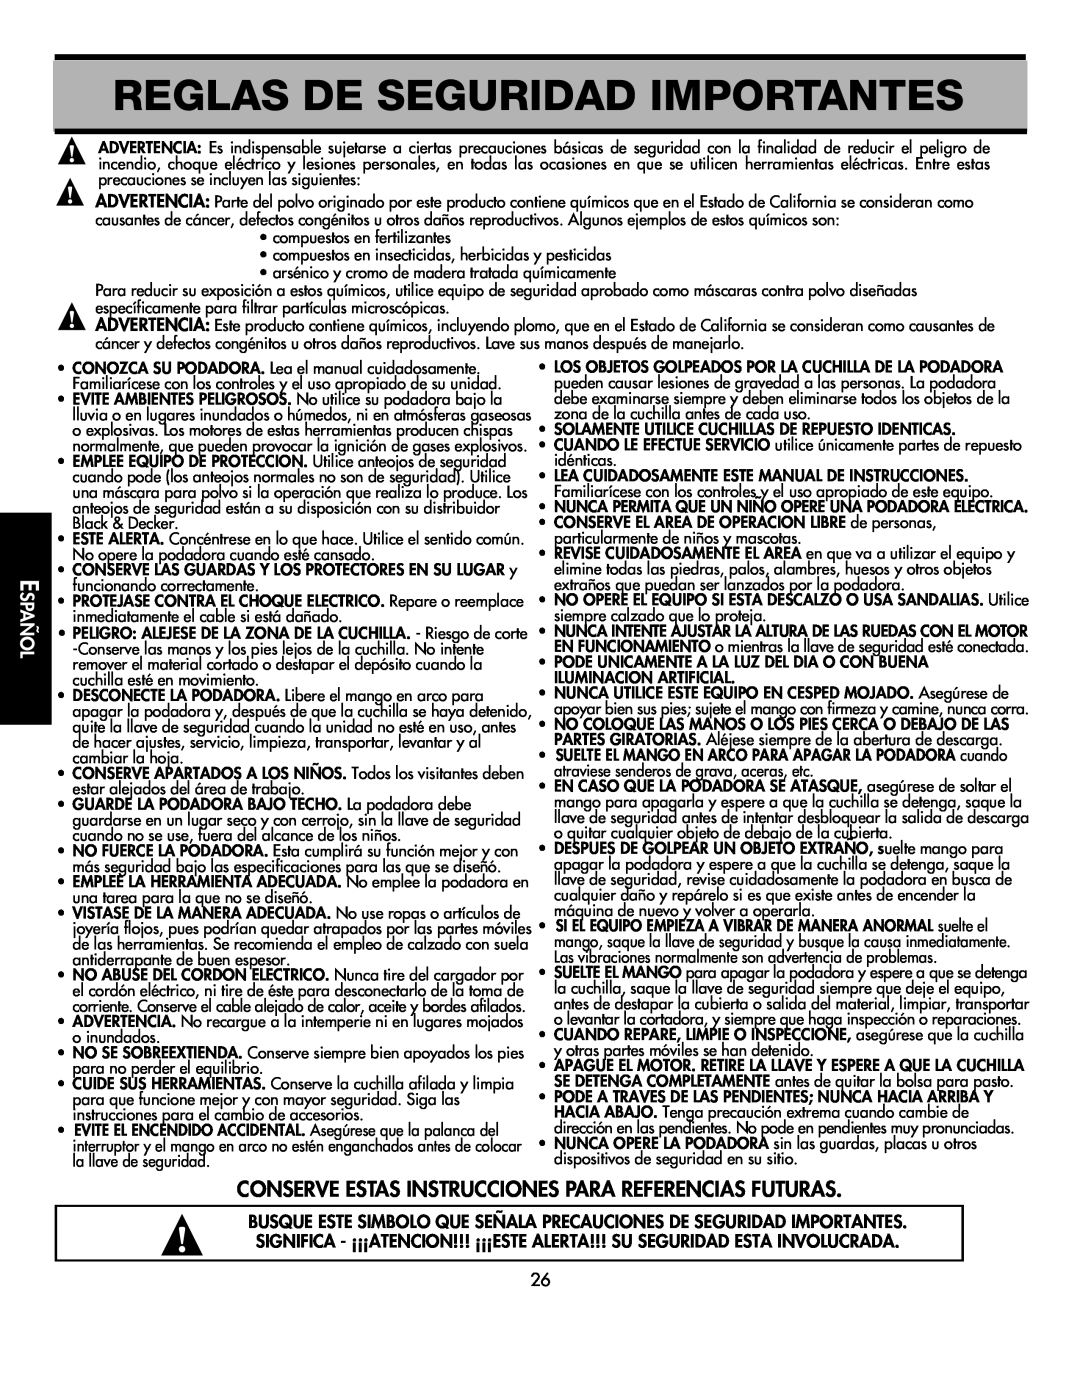 Black & Decker CMM1000 Reglas De Seguridad Importantes, Conserve Estas Instrucciones Para Referencias Futuras, Español 